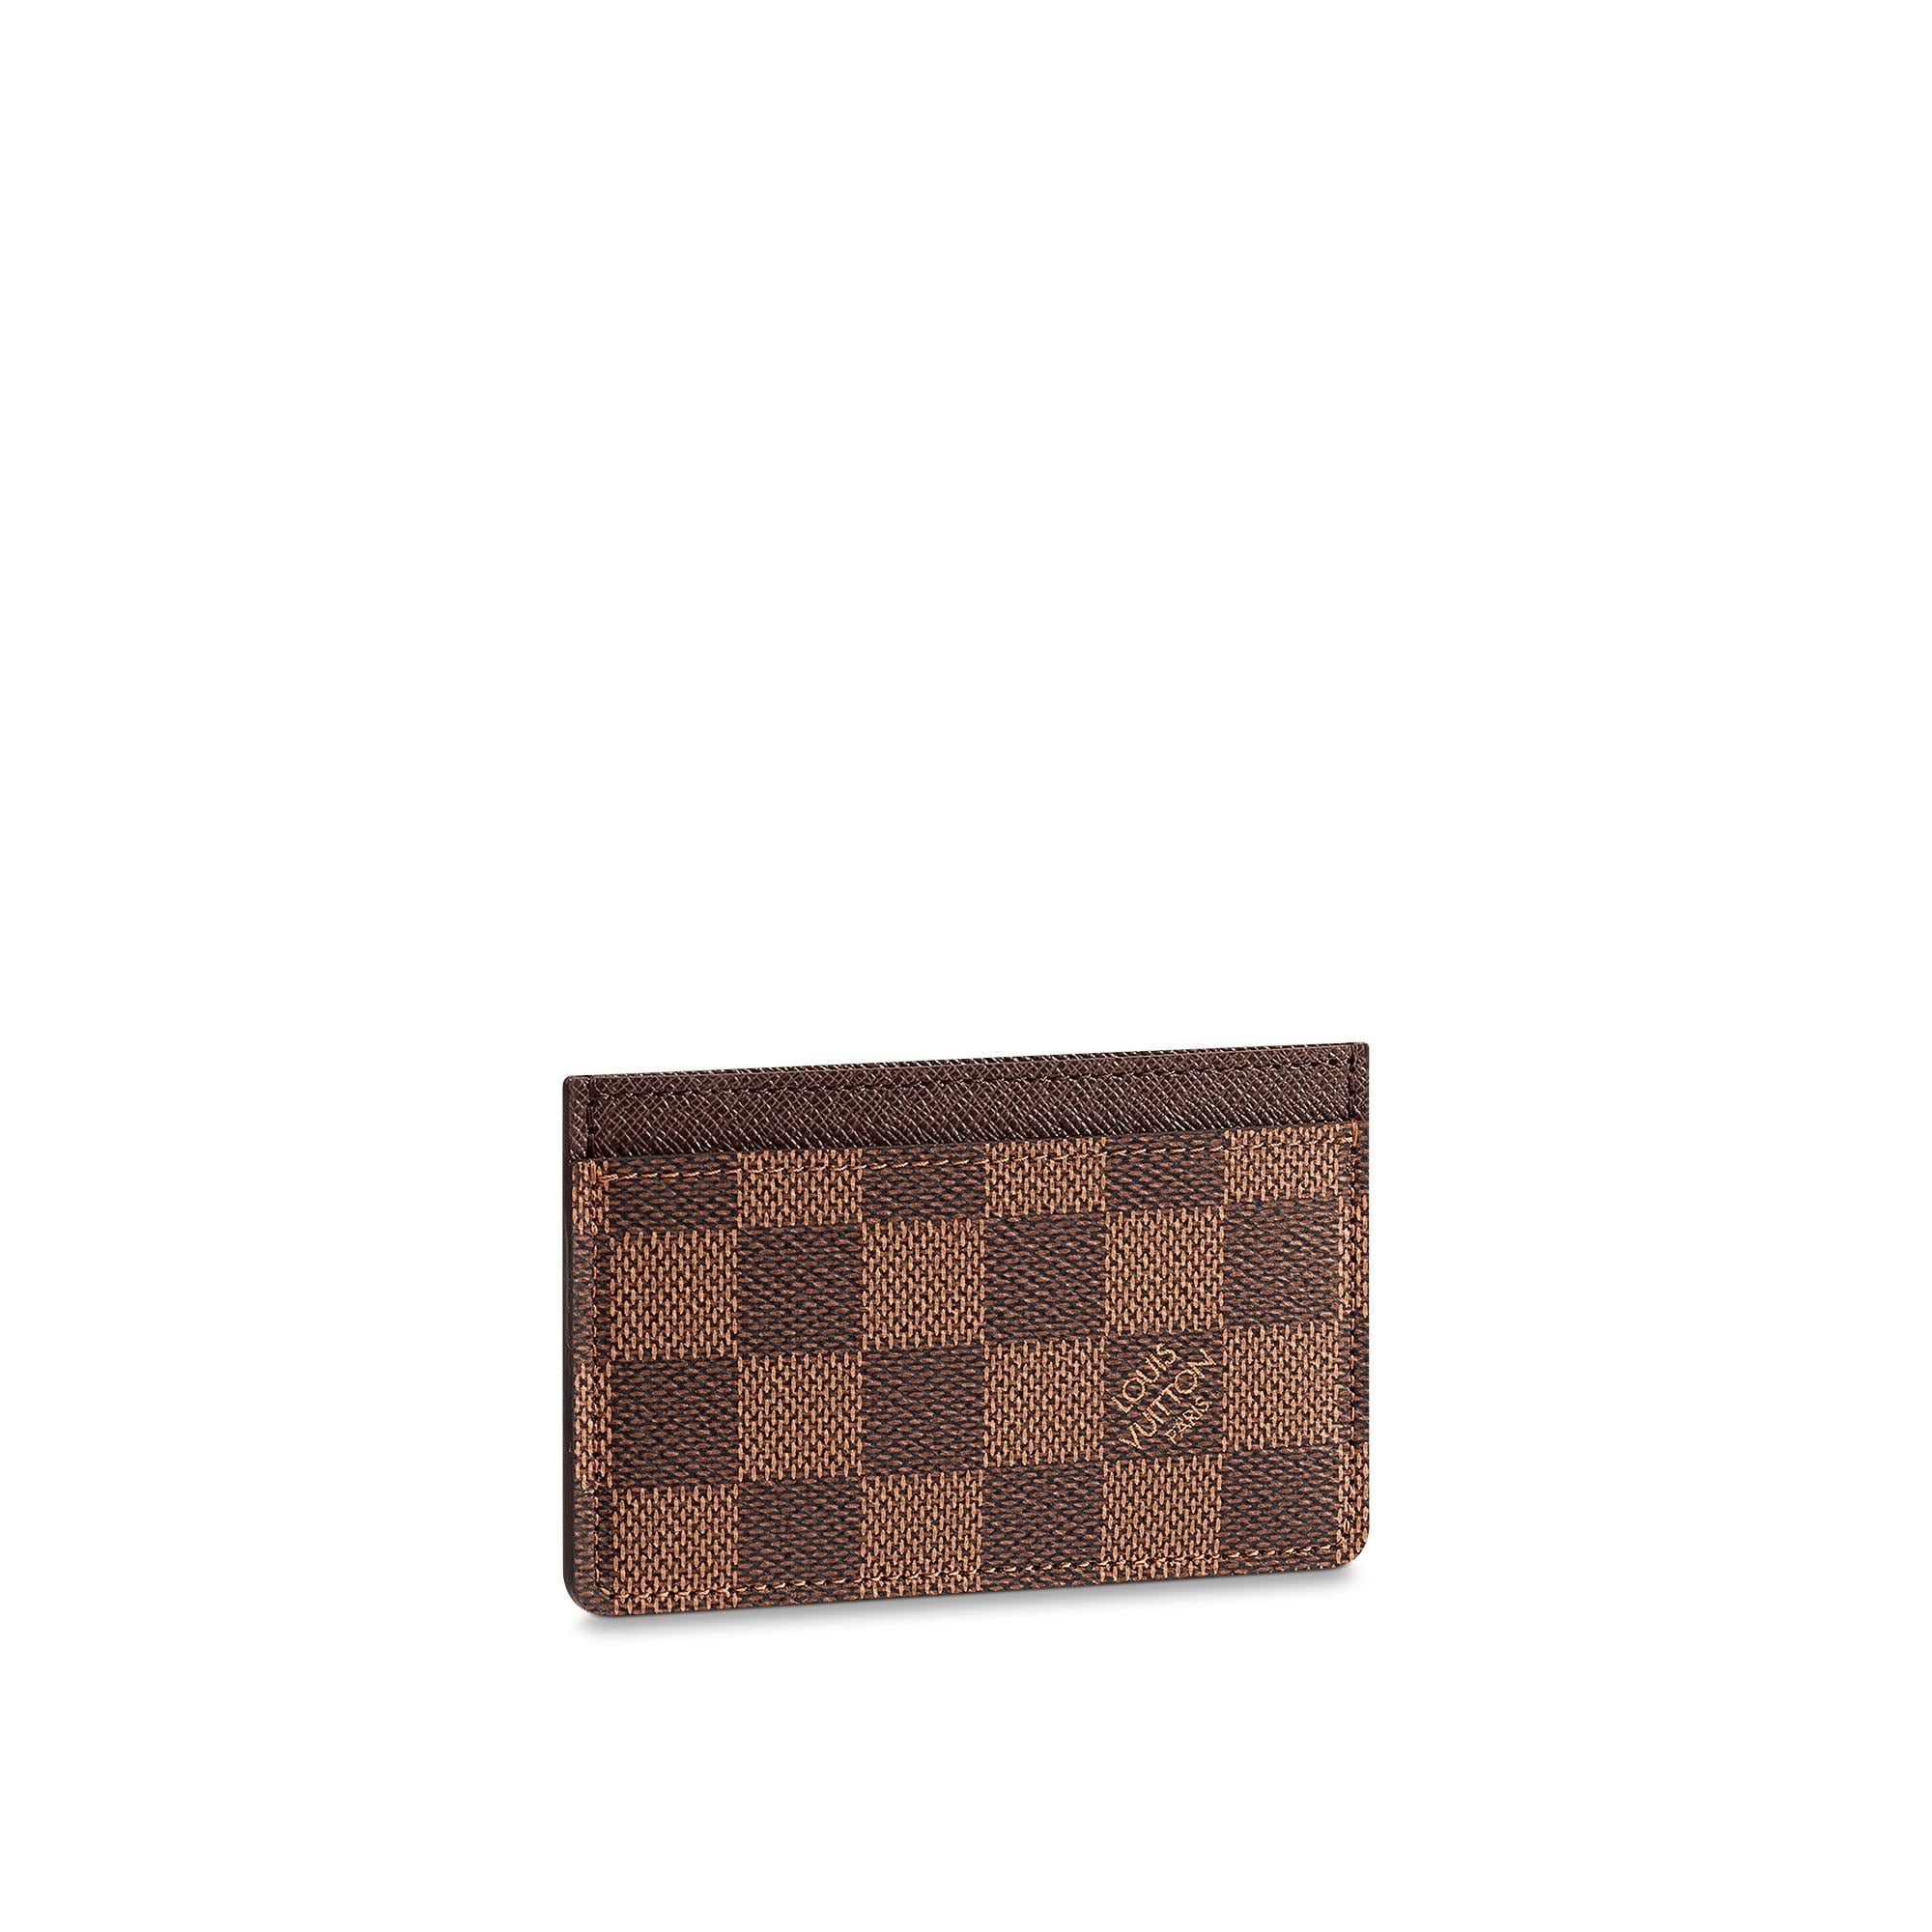 Louis Vuitton Card Holder Damier Ebene – Men – Small Leather Goods N61722 Damier Ebene